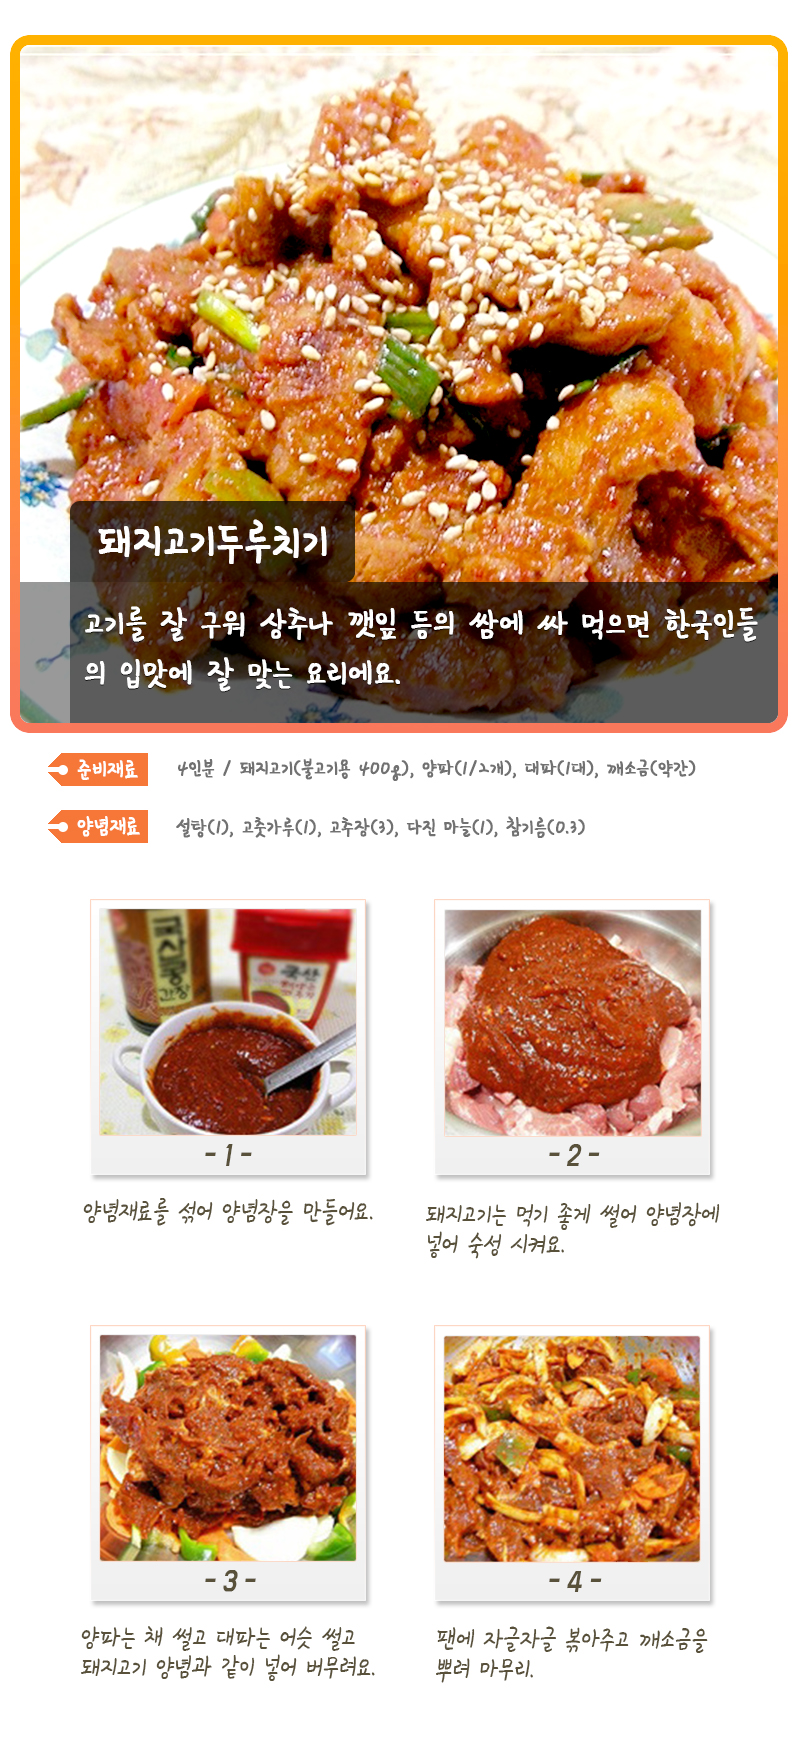 돼지고기두루치기 고기를 잘 구워 상추나 깻잎 등의 쌈에 싸 먹으면 한국인들의 입맛에 잘 맞는 요리에요. 준비재료 4인분 / 돼지고기(불고기용 400g), 양파(1/2개), 대파(1대), 깨소금(약간) 양념재료 설탕(1), 고춧가루(1), 고추장(3), 다진 마늘(1), 참기름(0.3) -1- 양념재료를 섞어 양념장을 만들어요. -2- 돼지고기는 먹기 좋게 썰어 양념장에 넣어 숙성 시켜요. -3- 양파는 채 썰고 대파는 어슷 썰고 돼지고기 양념과 같이 넣어 버무려요. -4- 팬에 자글자글 볶아주고 깨소금을 뿌려 마무리.